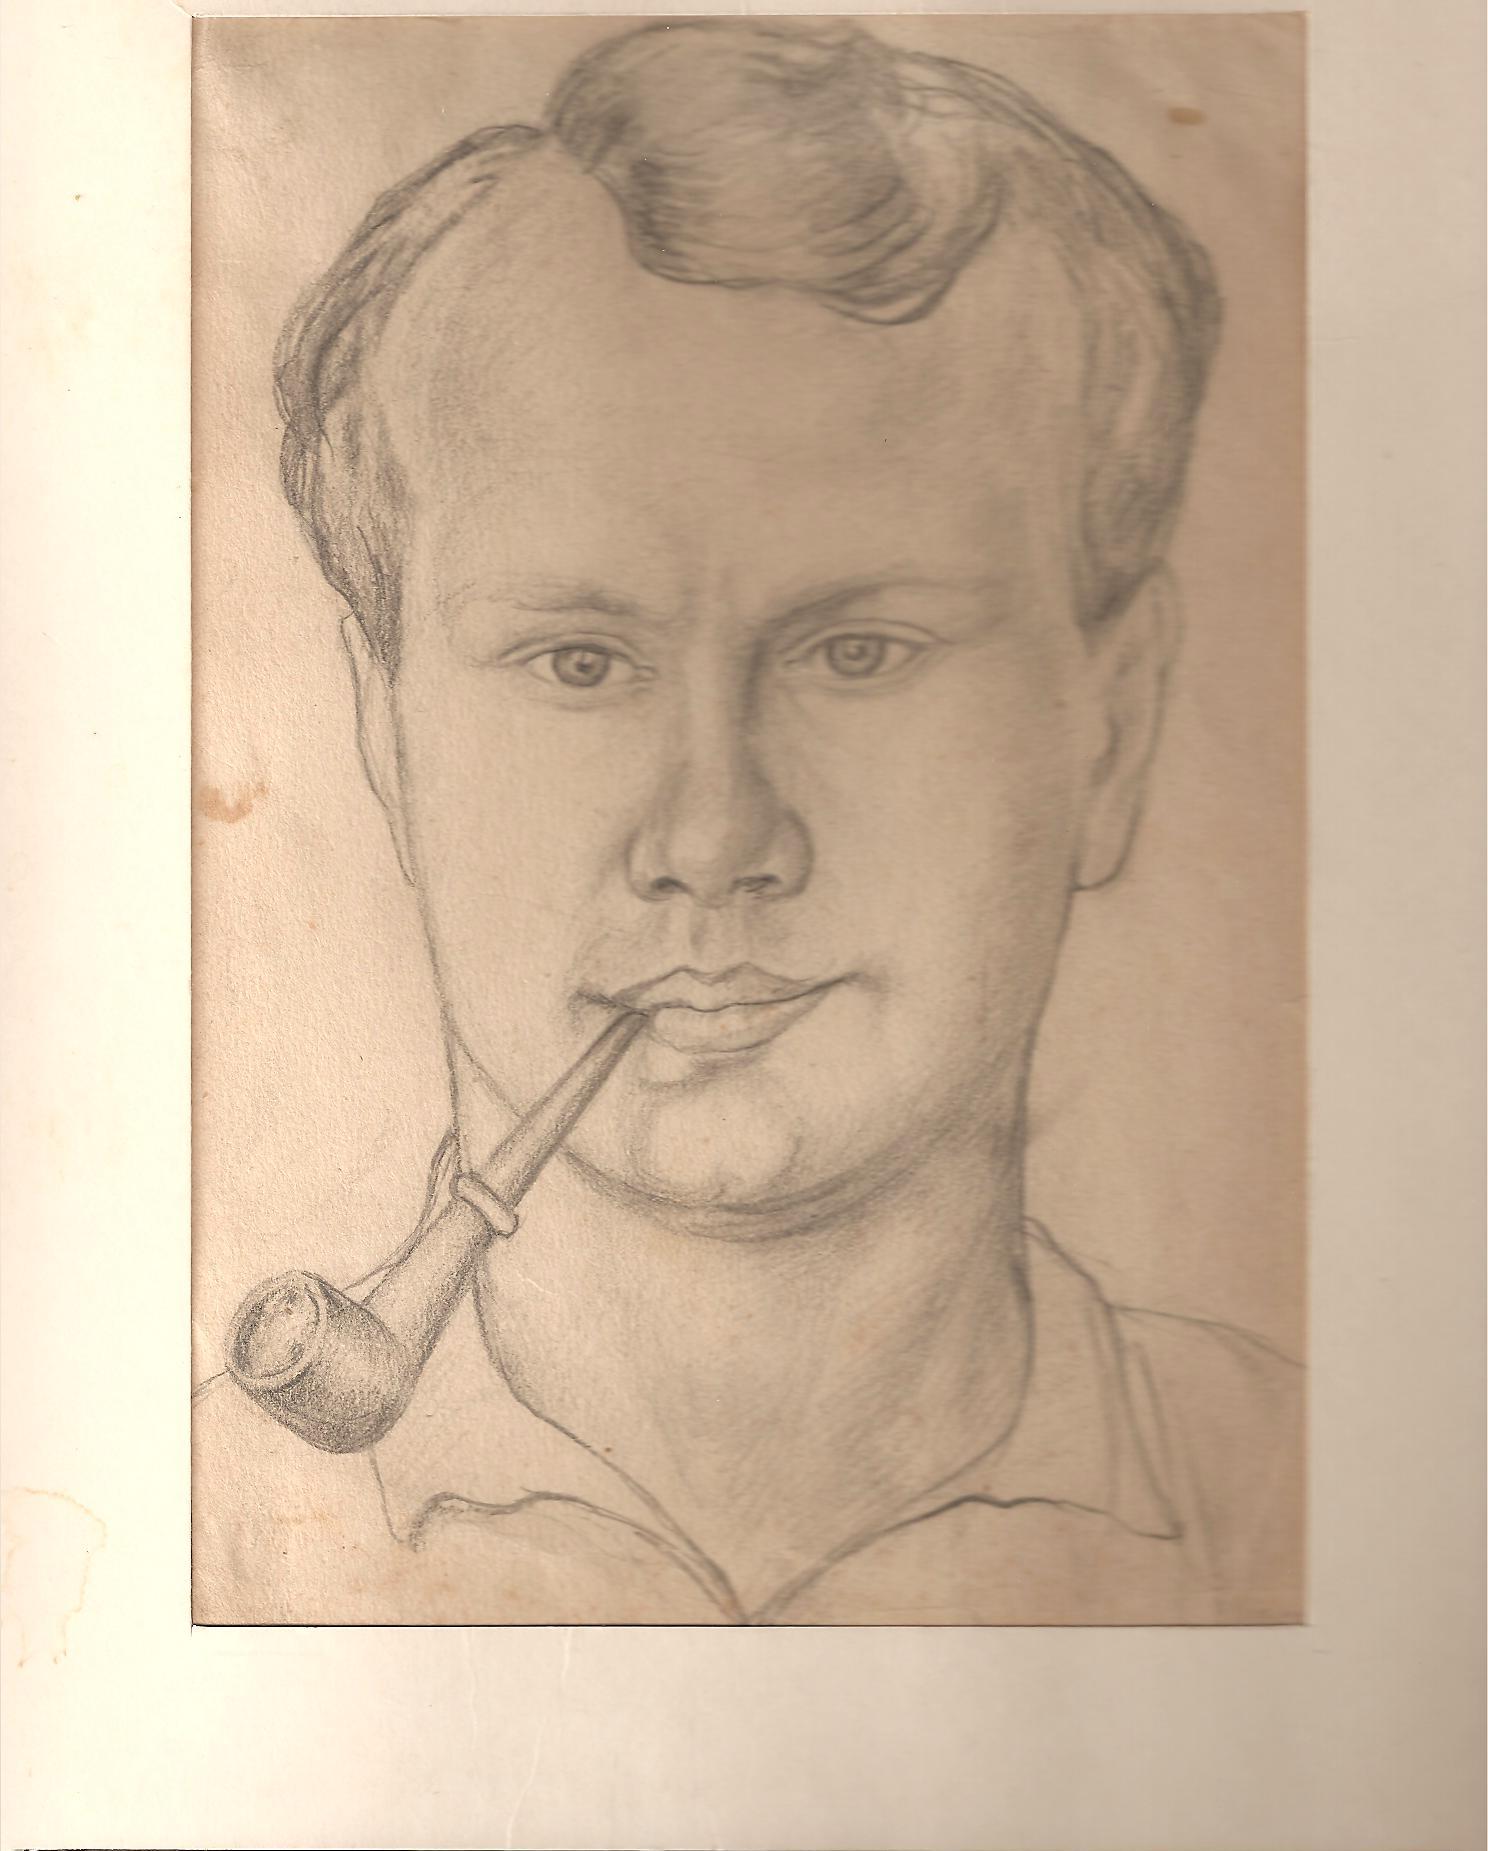 Барашьян О.М. (Р.Т.). Портрет Лотошникова. 1930.